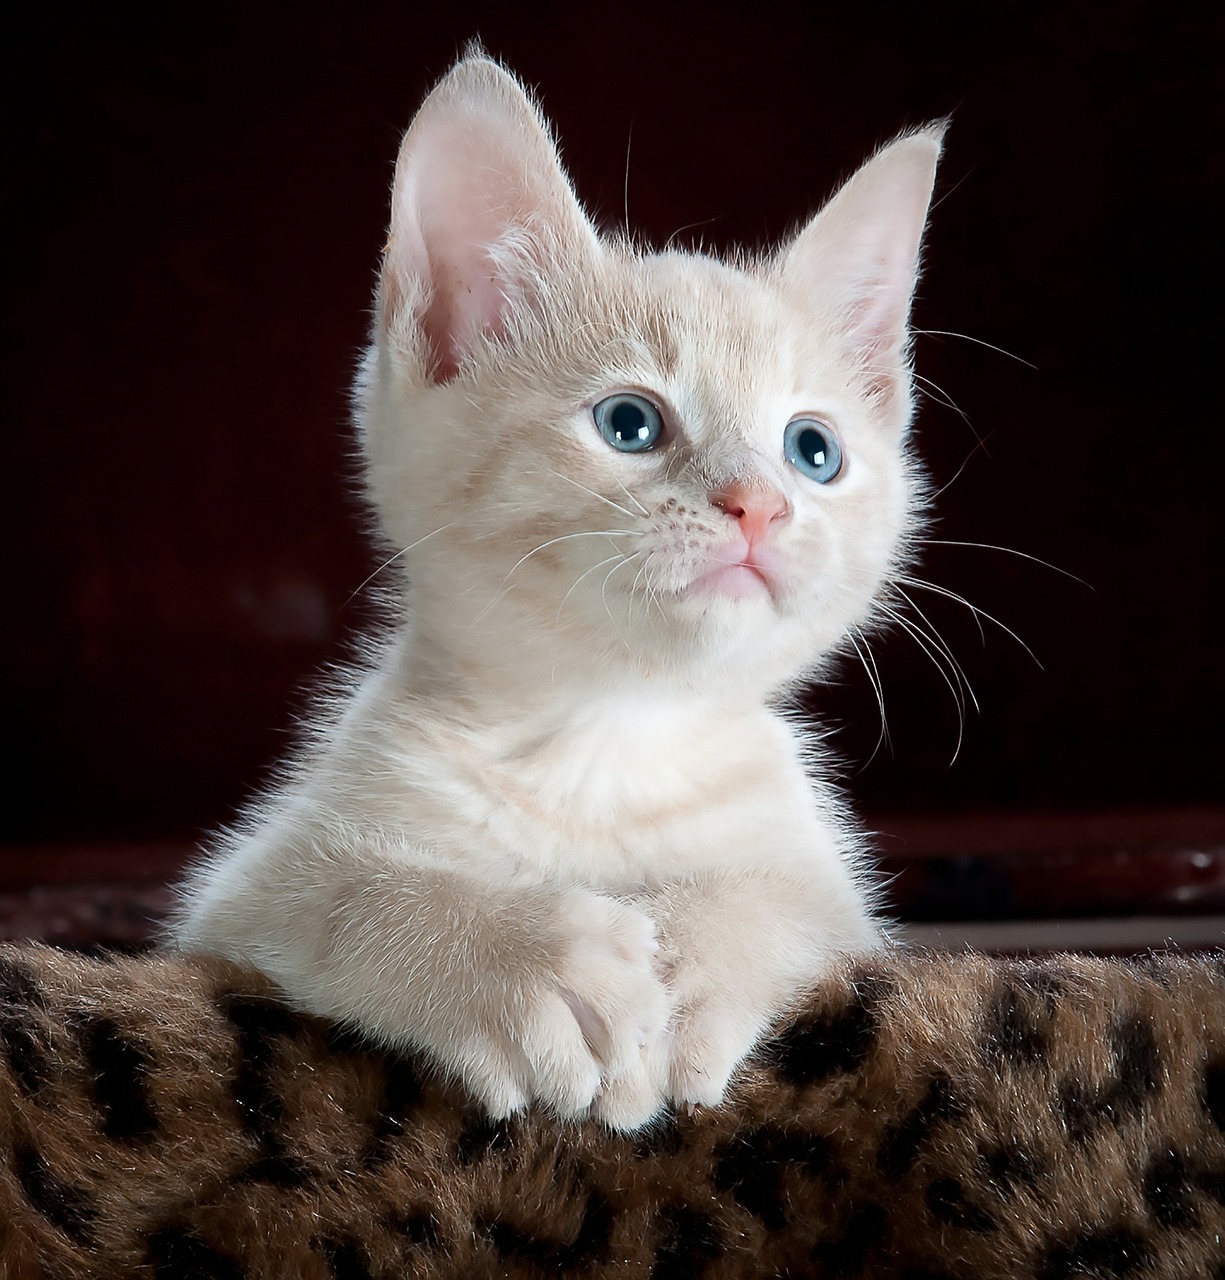 Image - kitty cat kitten pet animal cute